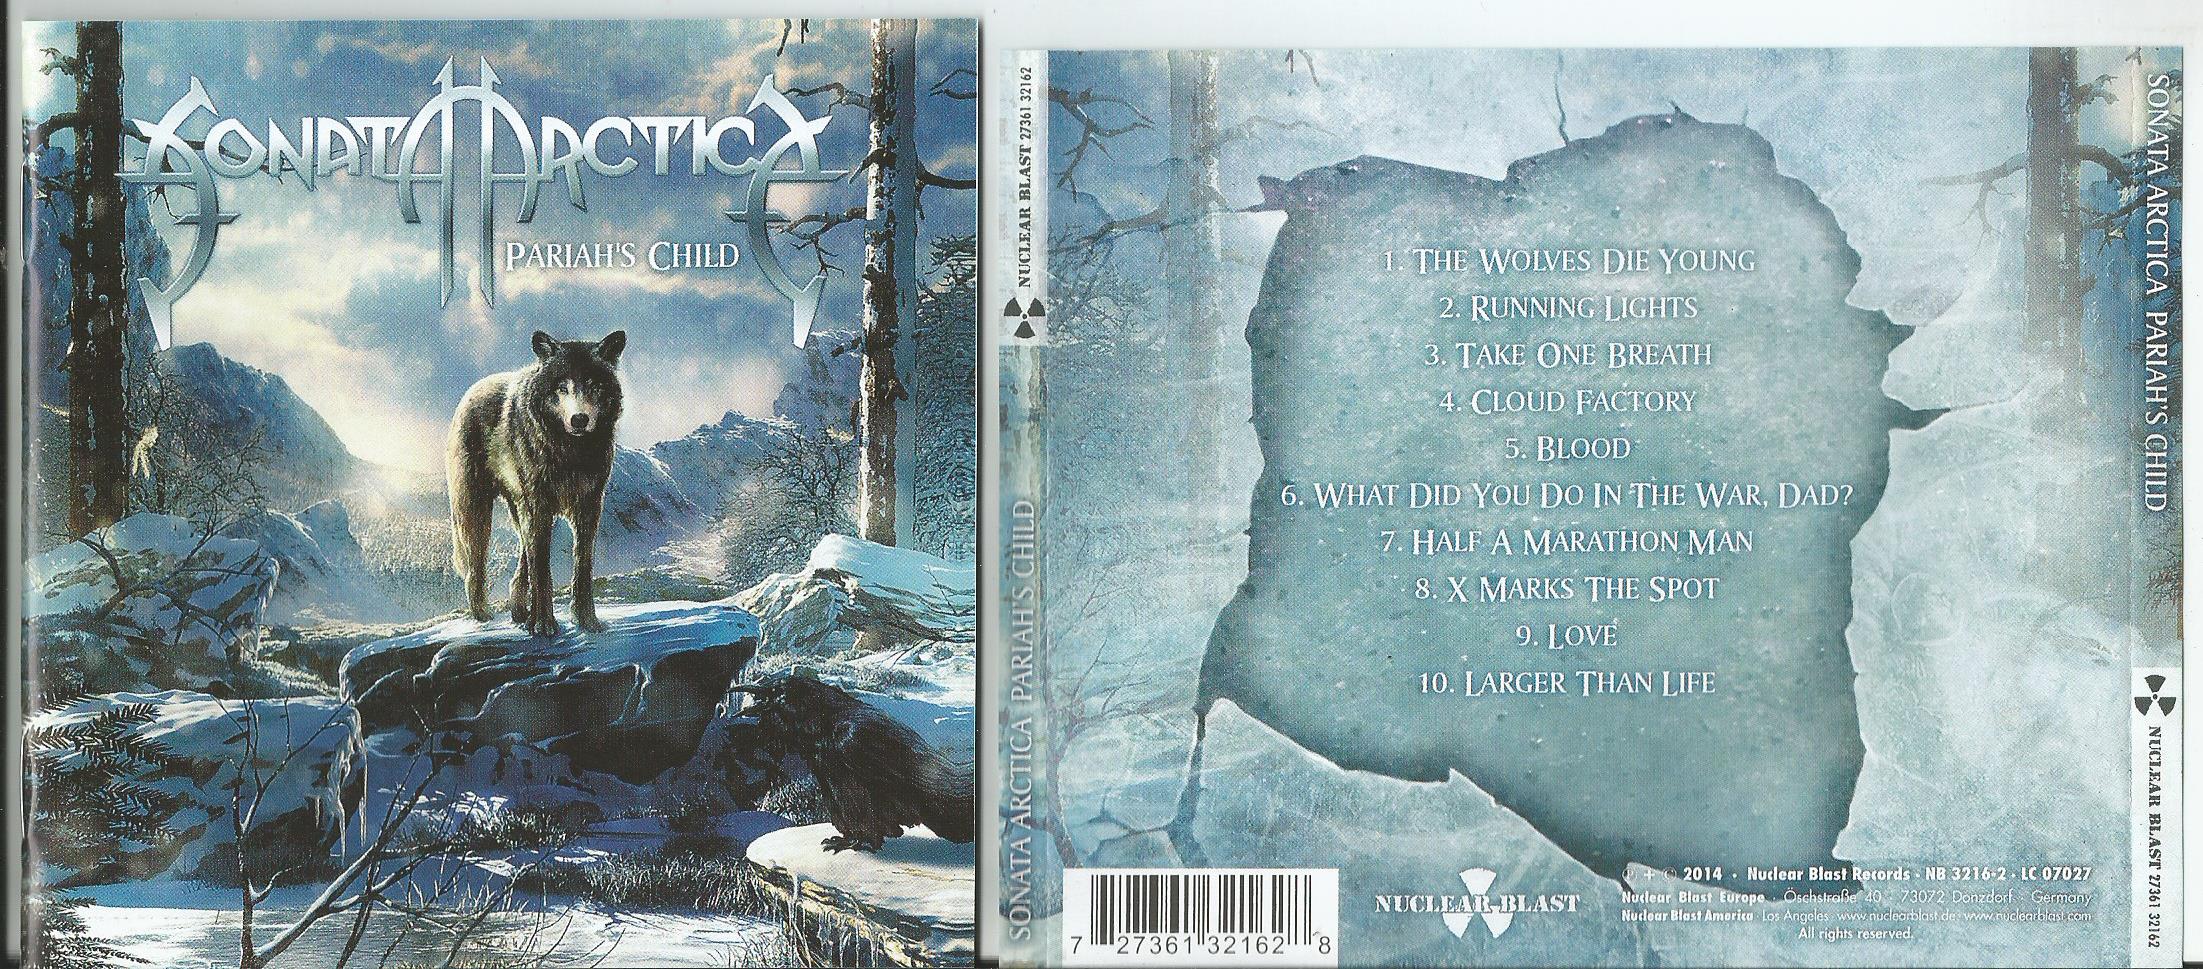 Sonata arctica clear cold beyond 2024. Sonata Arctica Pariah's child 2014. Sonata Arctica. Sonata Arctica albums. Фото Sonata Arctica.